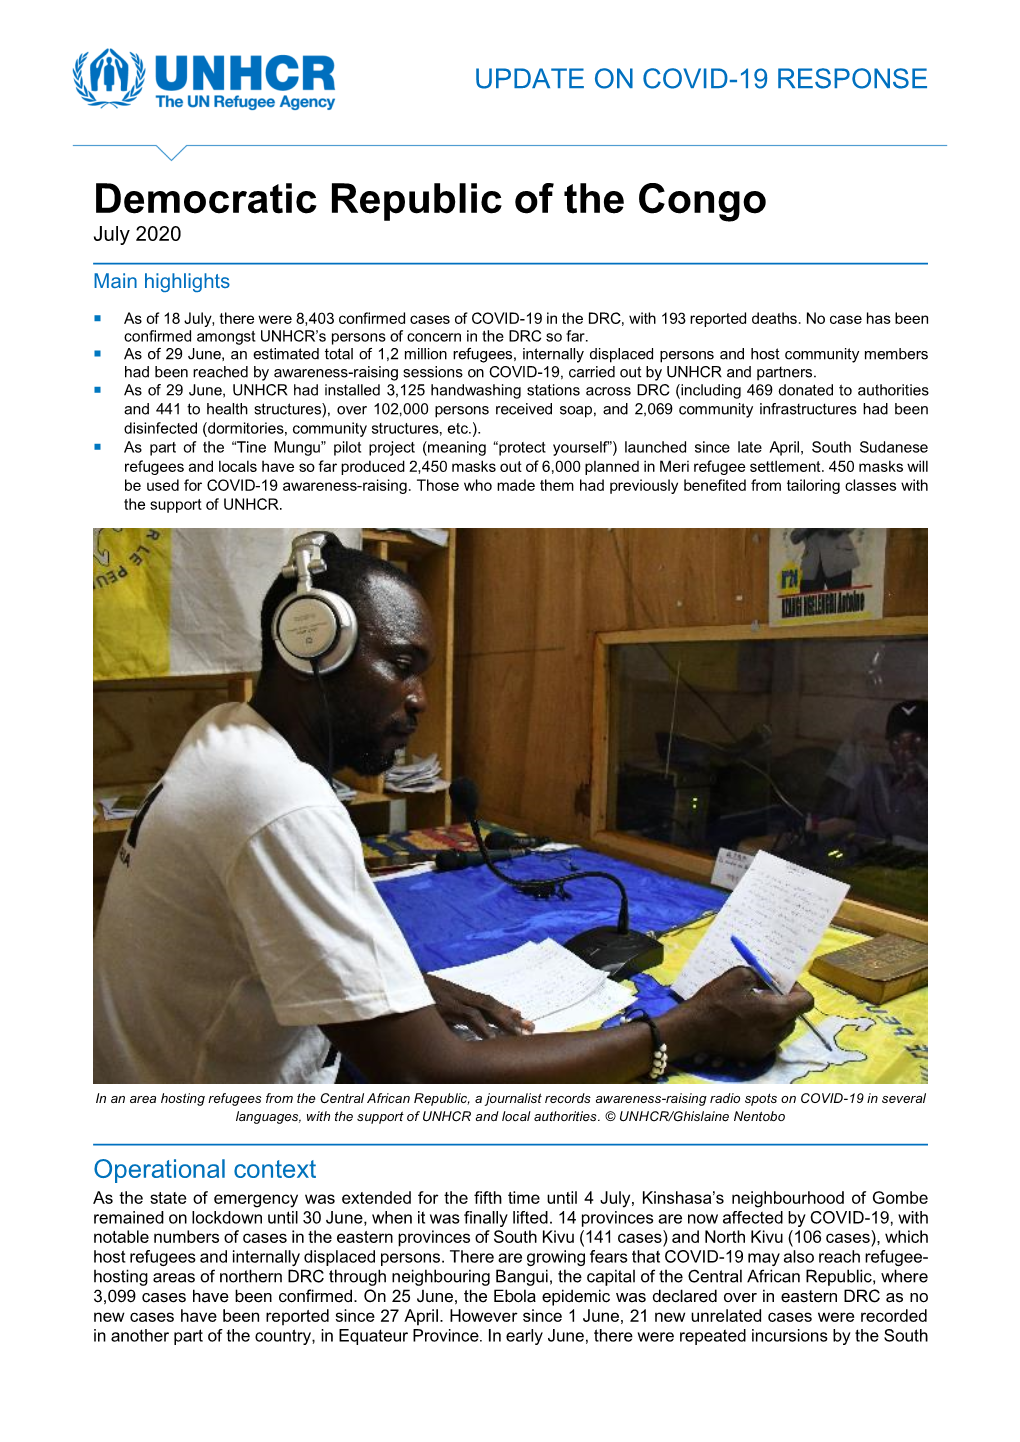 UNHCR Democratic Republic of the Congo COVID-19 Update